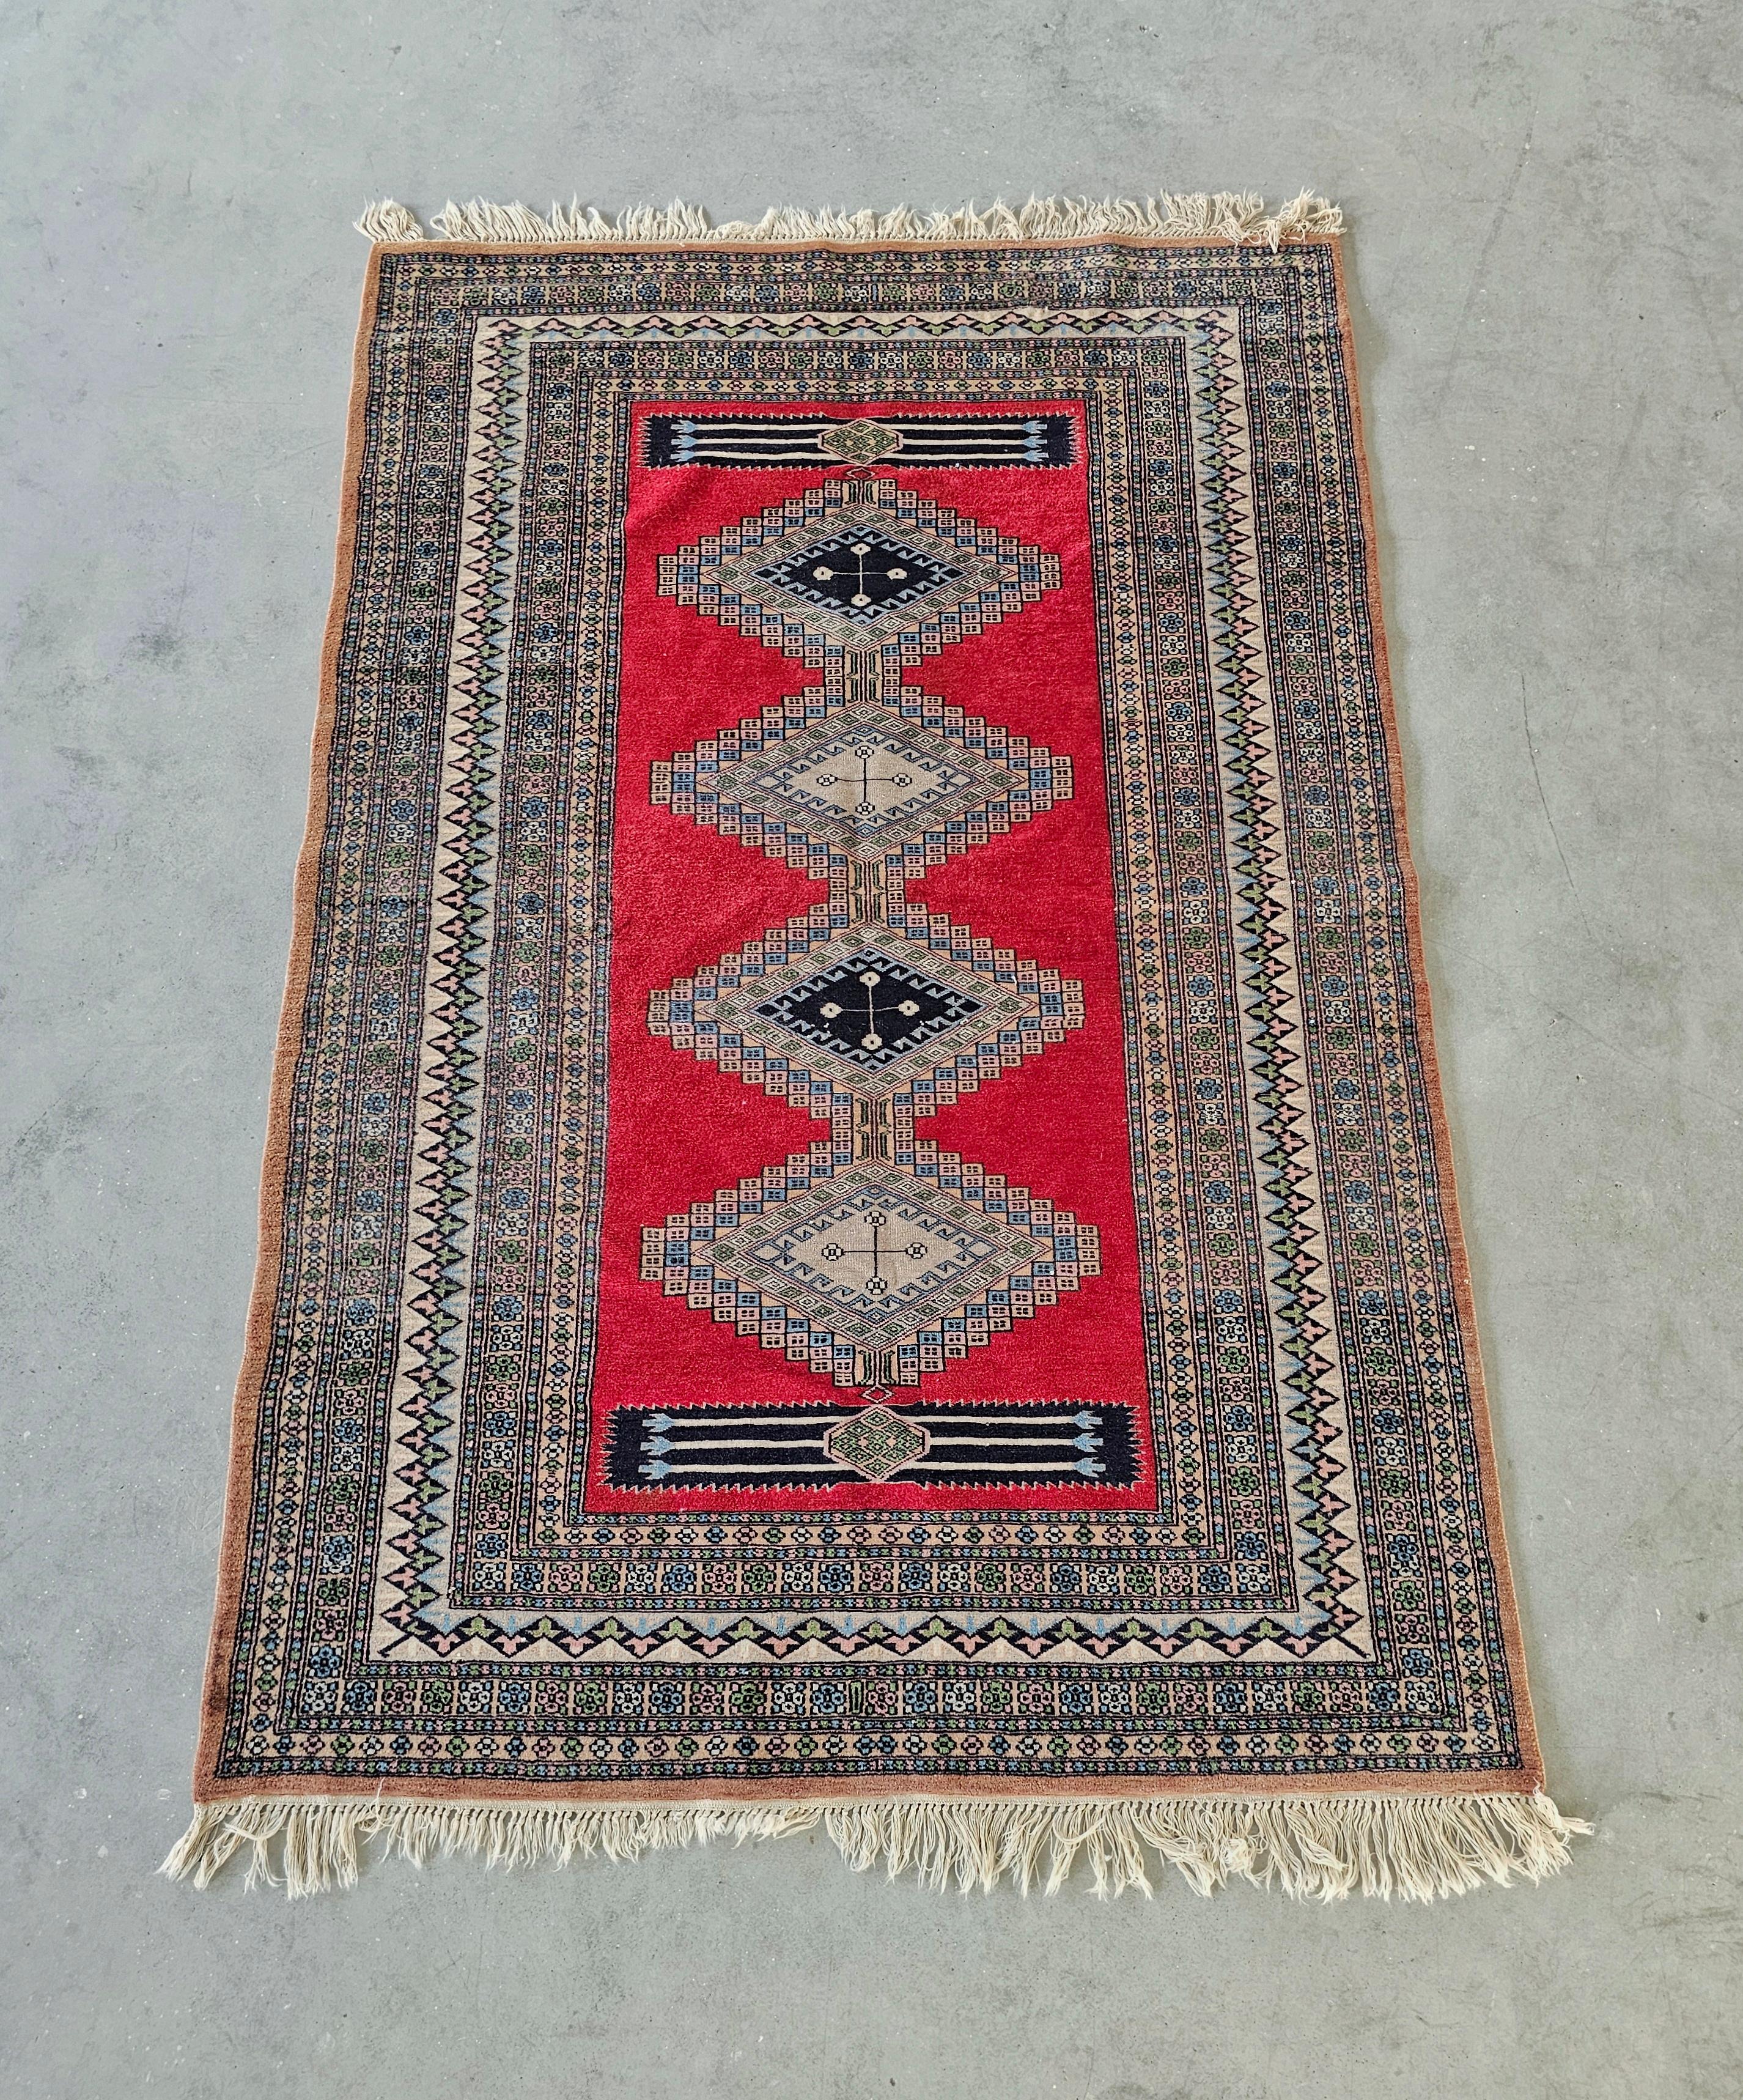 In diesem Angebot finden Sie eine wunderschöne mittelgroße persische Teppich handgeknüpft in 100% feiner Wolle. Der Teppich gehört zu den Ghom-Teppichen, die sich durch eine hohe Knotendichte auszeichnen. Hergestellt in Pakistan in den 1930er